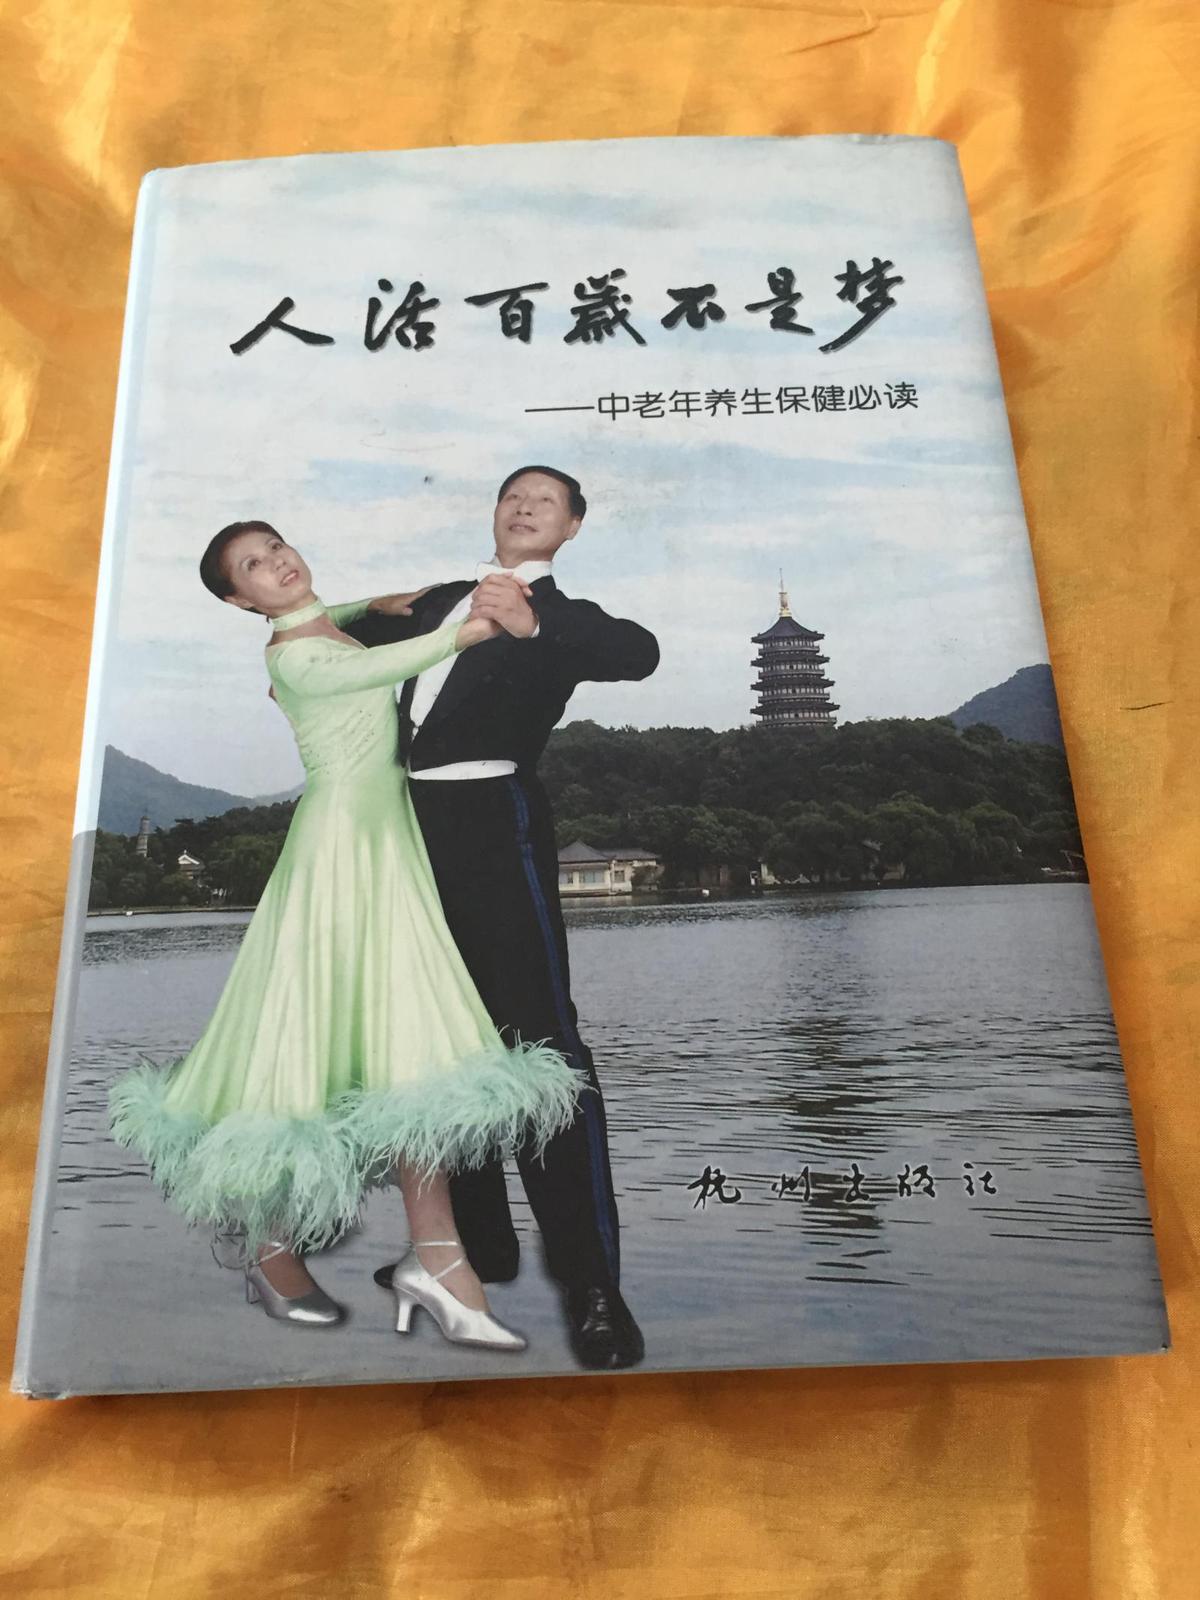 人活百岁不是梦 中老年养生保健必读 16开精装有护封  杭州出版社 2007年版